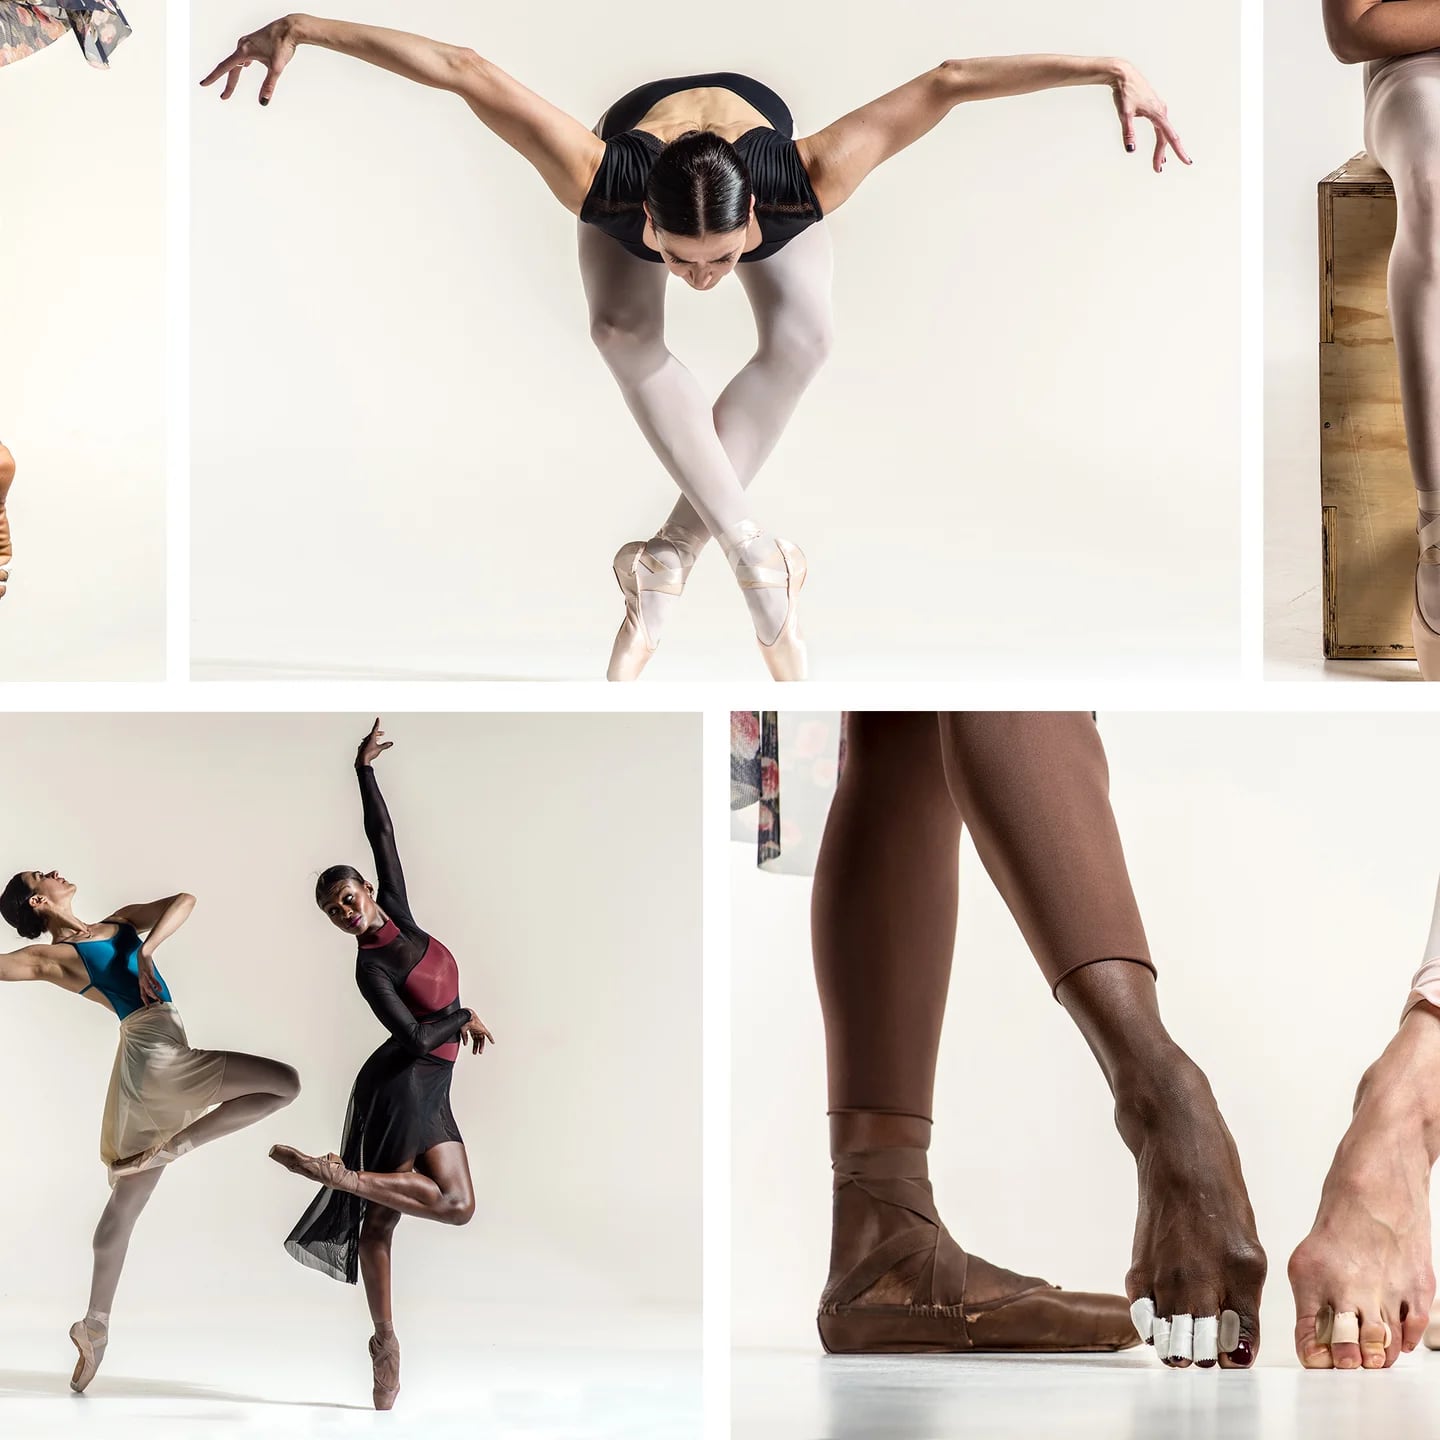 En puntas de pie: la agonía que se esconde detrás de esos bellos pasos de  ballet - Infobae